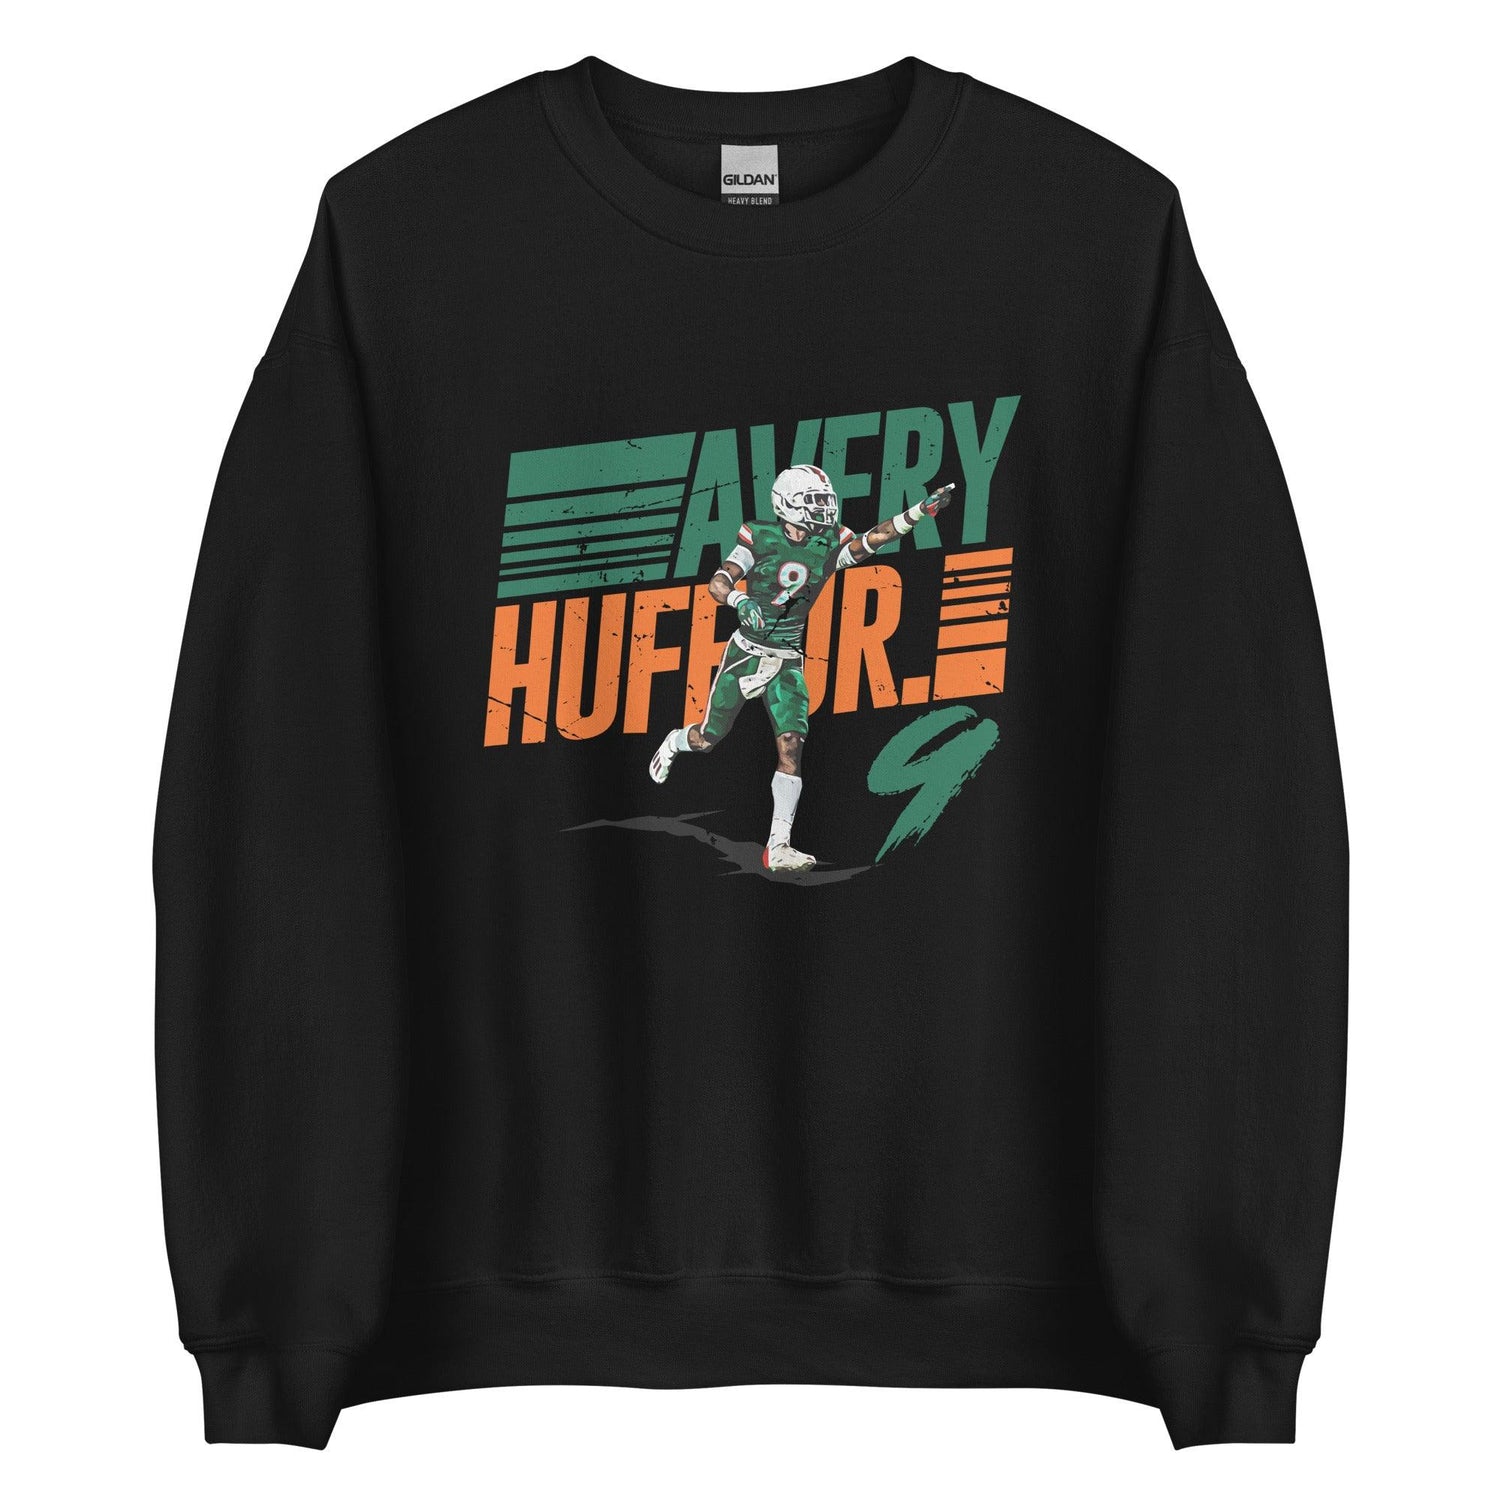 Avery Huff Jr. "Gametime" Sweatshirt - Fan Arch